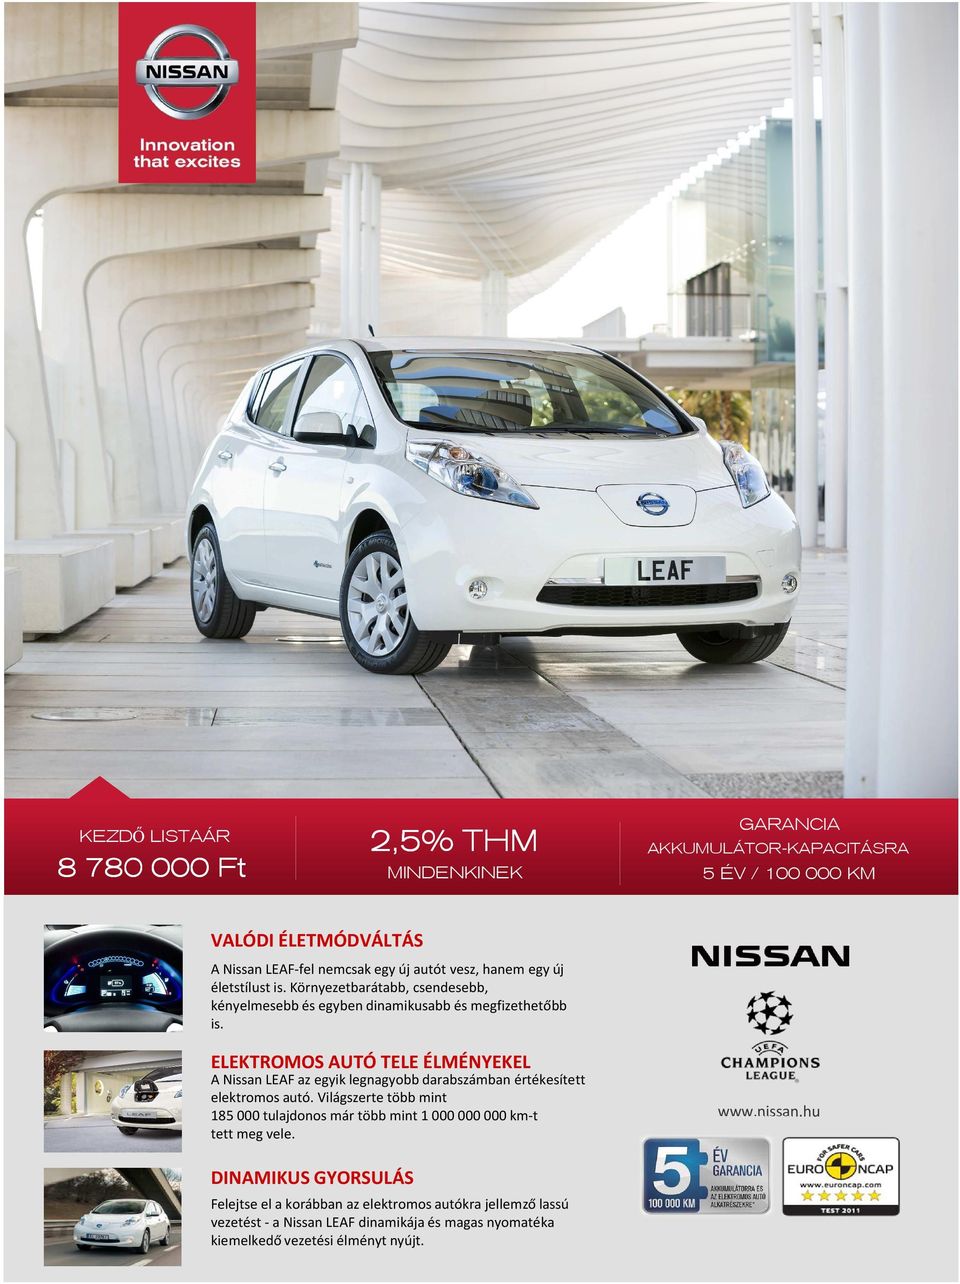 ELEKTROMOS AUTÓ TELE ÉLMÉNYEKEL A Nissan LEAF az egyik legnagyobb darabszámban értékesített elektromos autó.